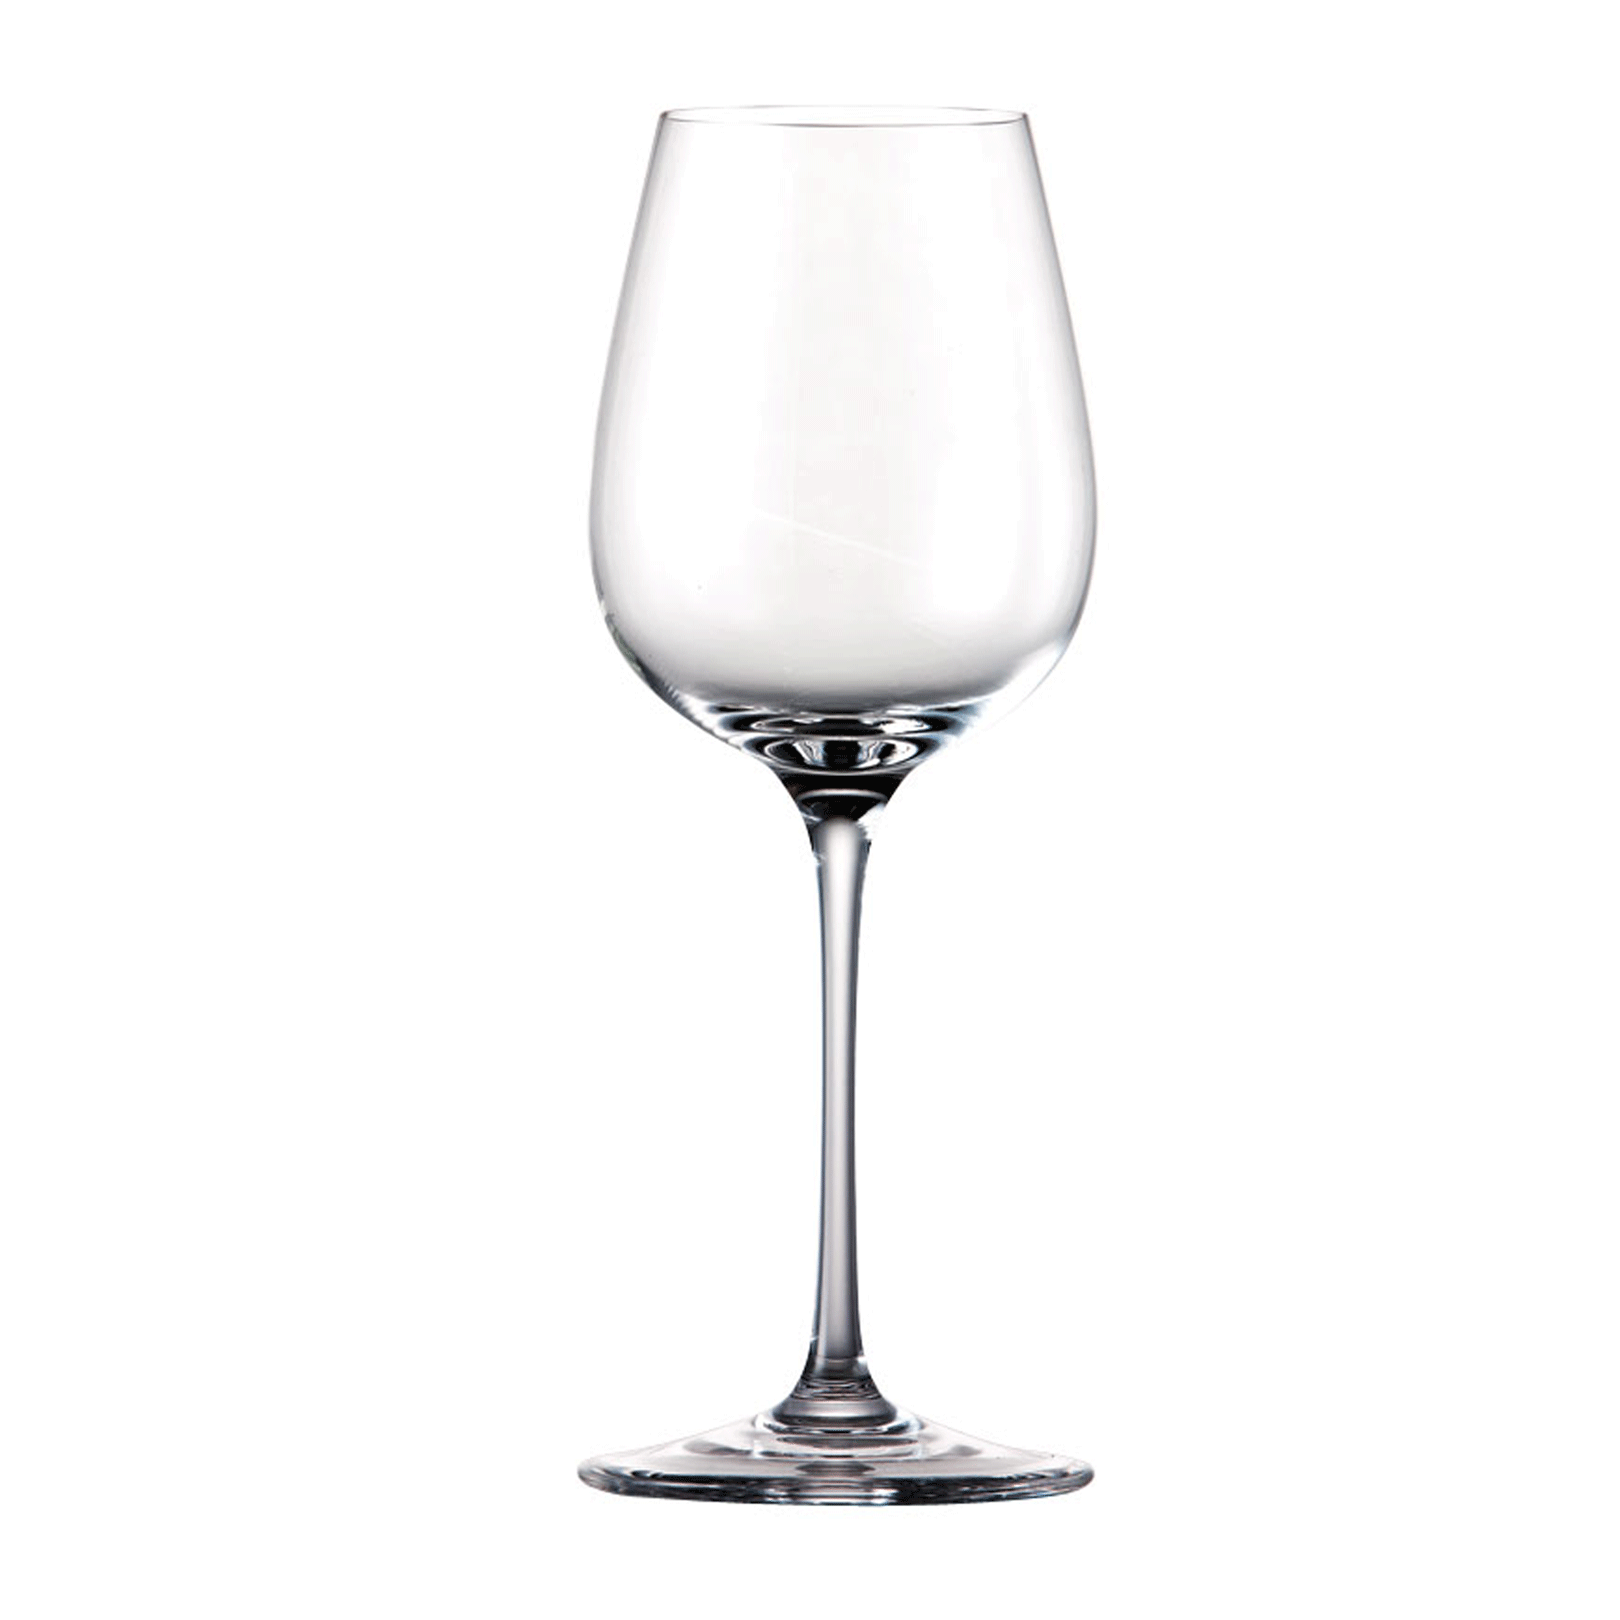 Rosenthal - Di Vino - Zestaw 6 kieliszków do wina białego duży